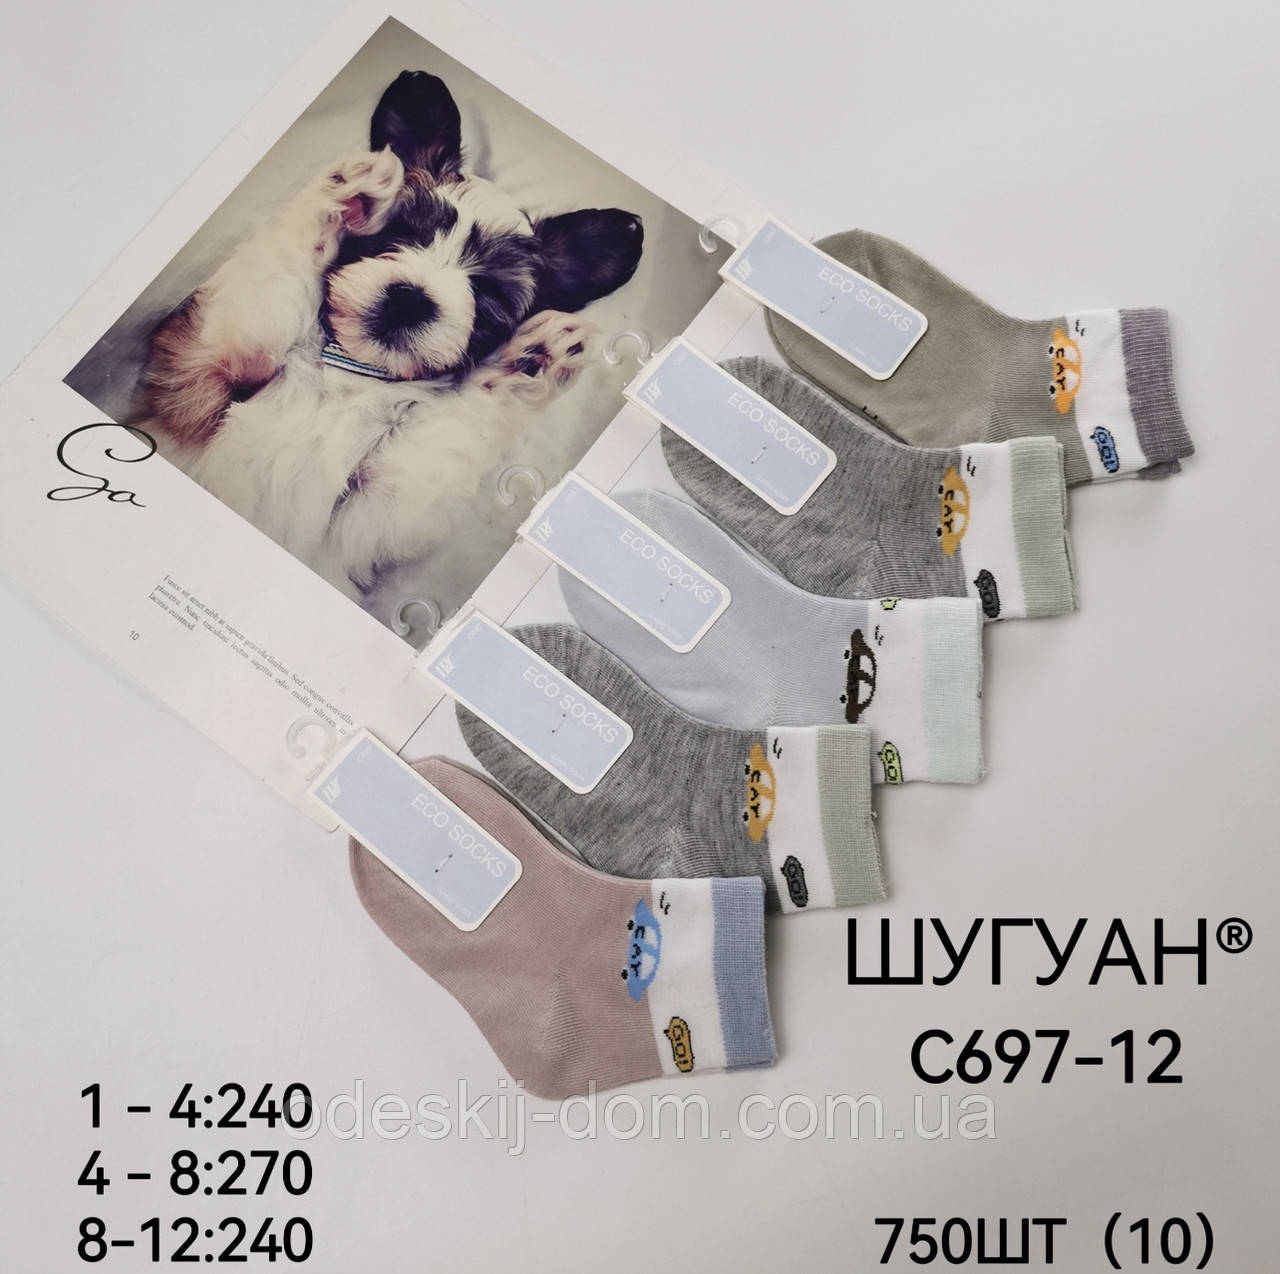 Дитячі якісні шкарпетки в розмірах™Шугуан р 8-12